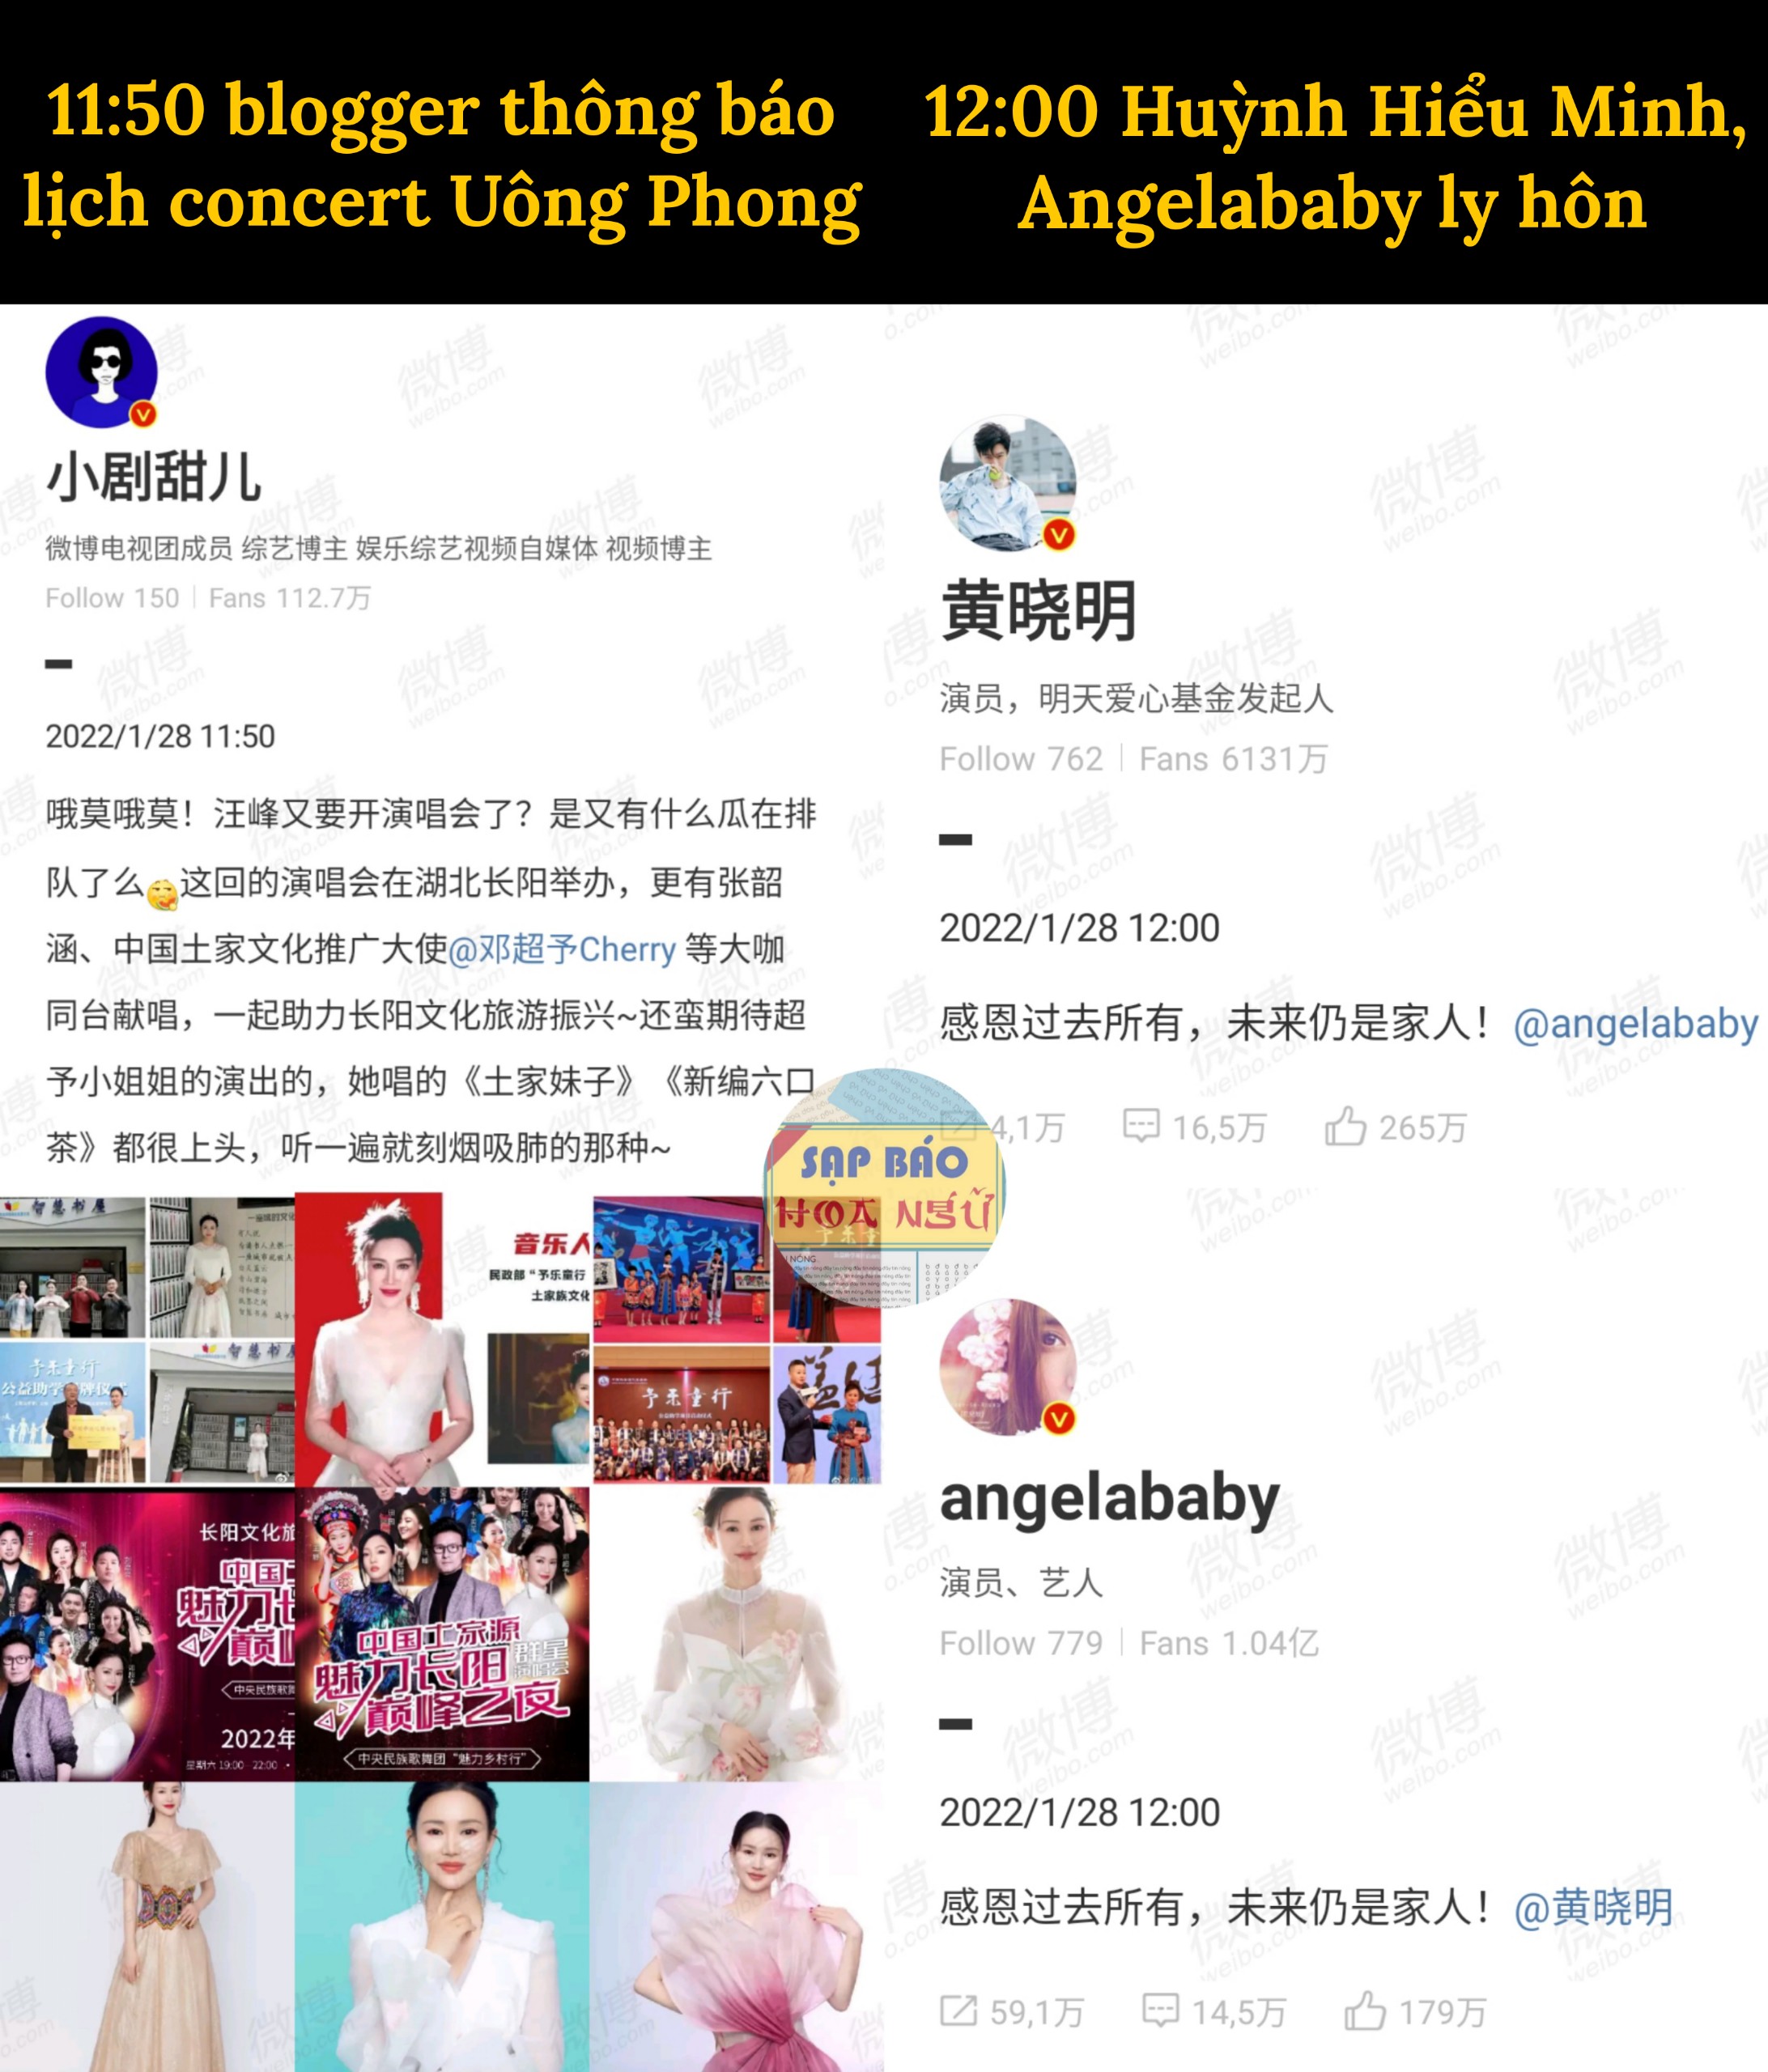 Bài đăng của blogger (trái) và bài đăng tuyên bố ly hôn của Huỳnh Hiểu Minh - Angelababy (phải)